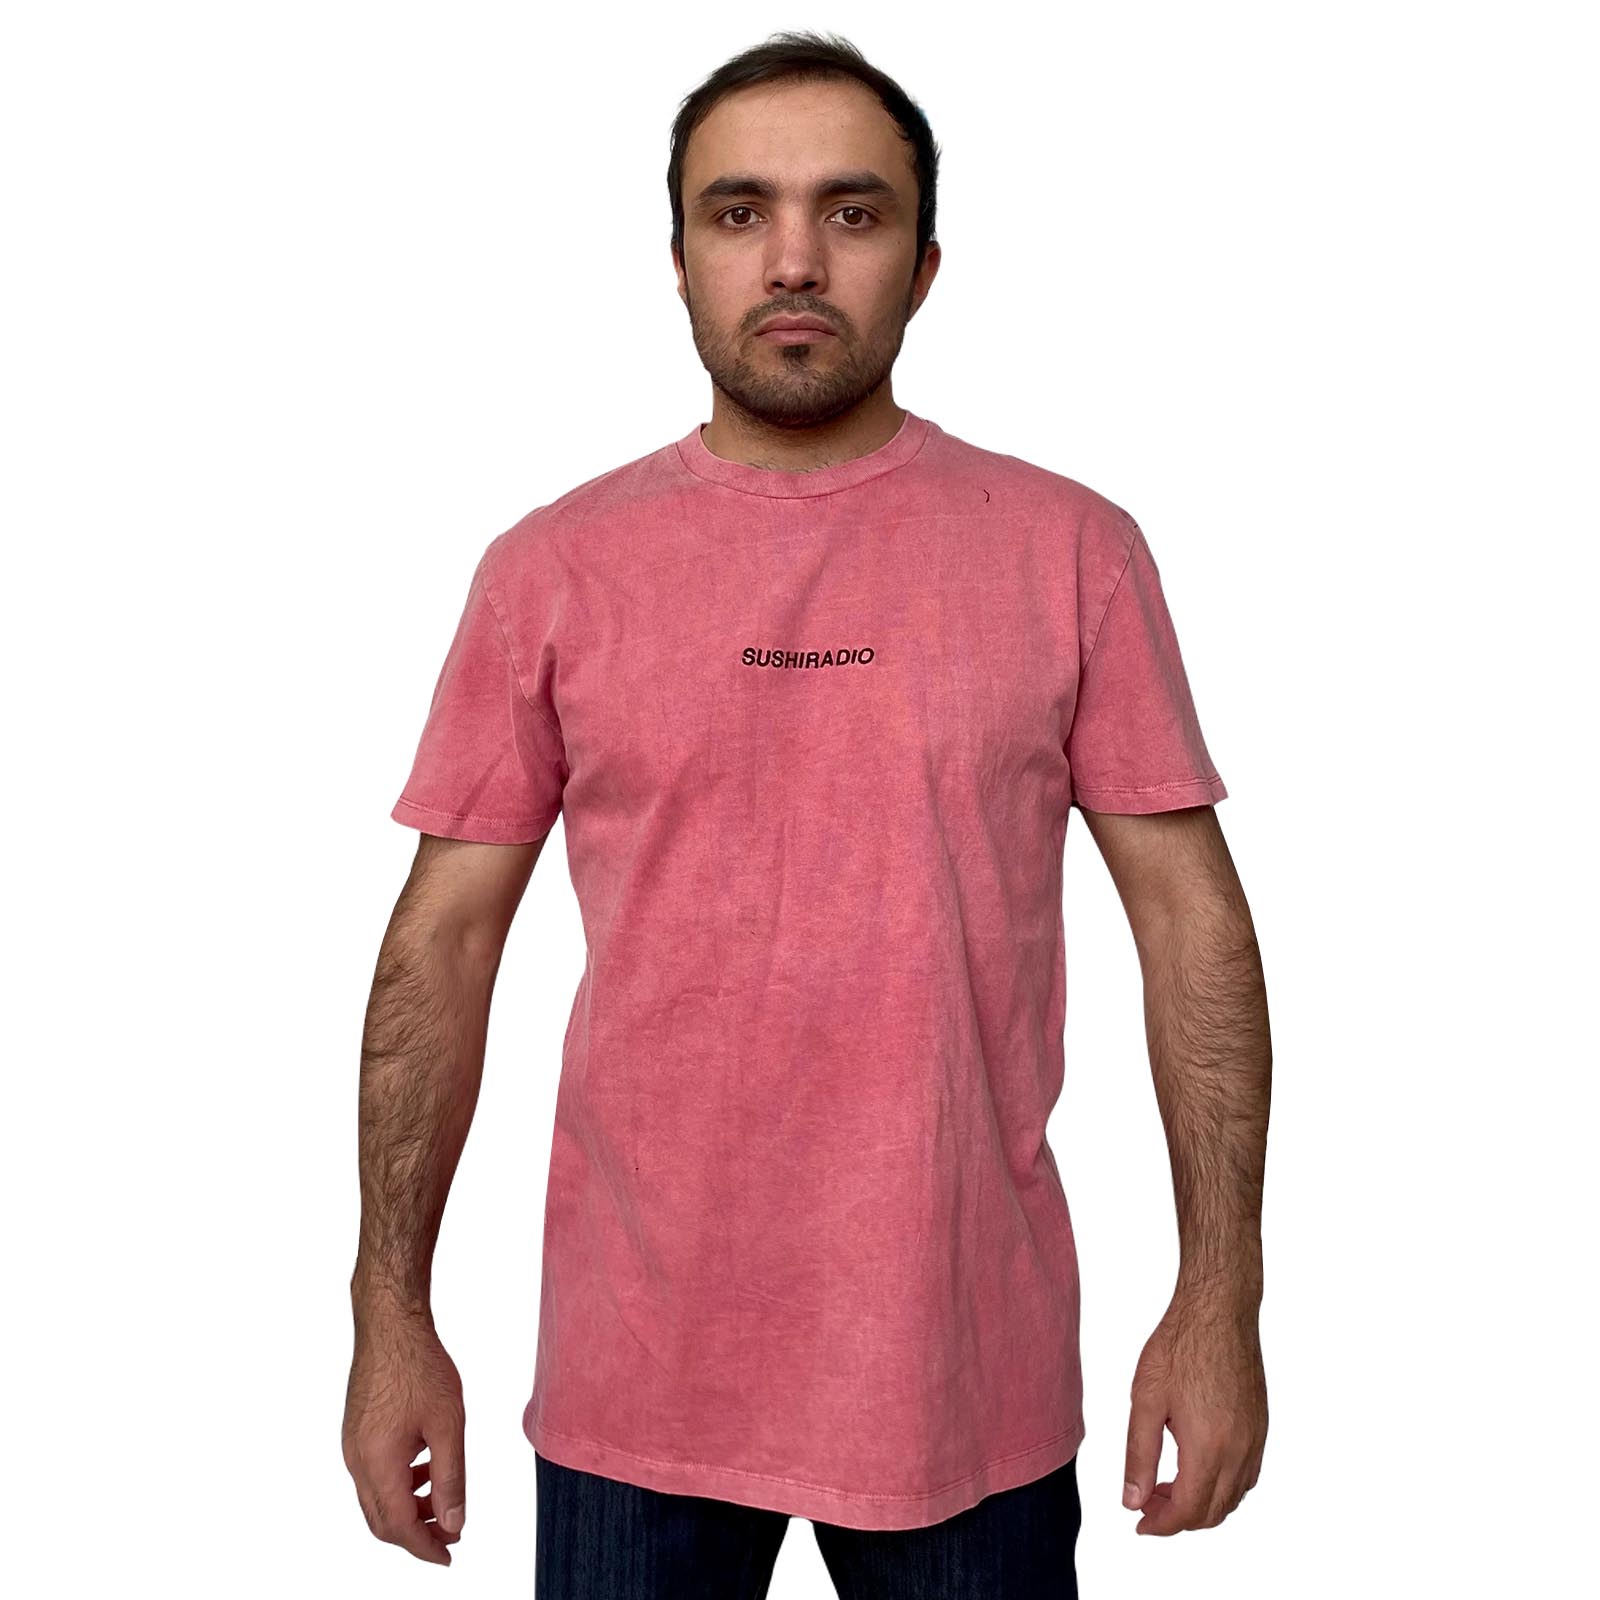 Купить в интернет магазине недорогую мужскую футболку Sushiradio